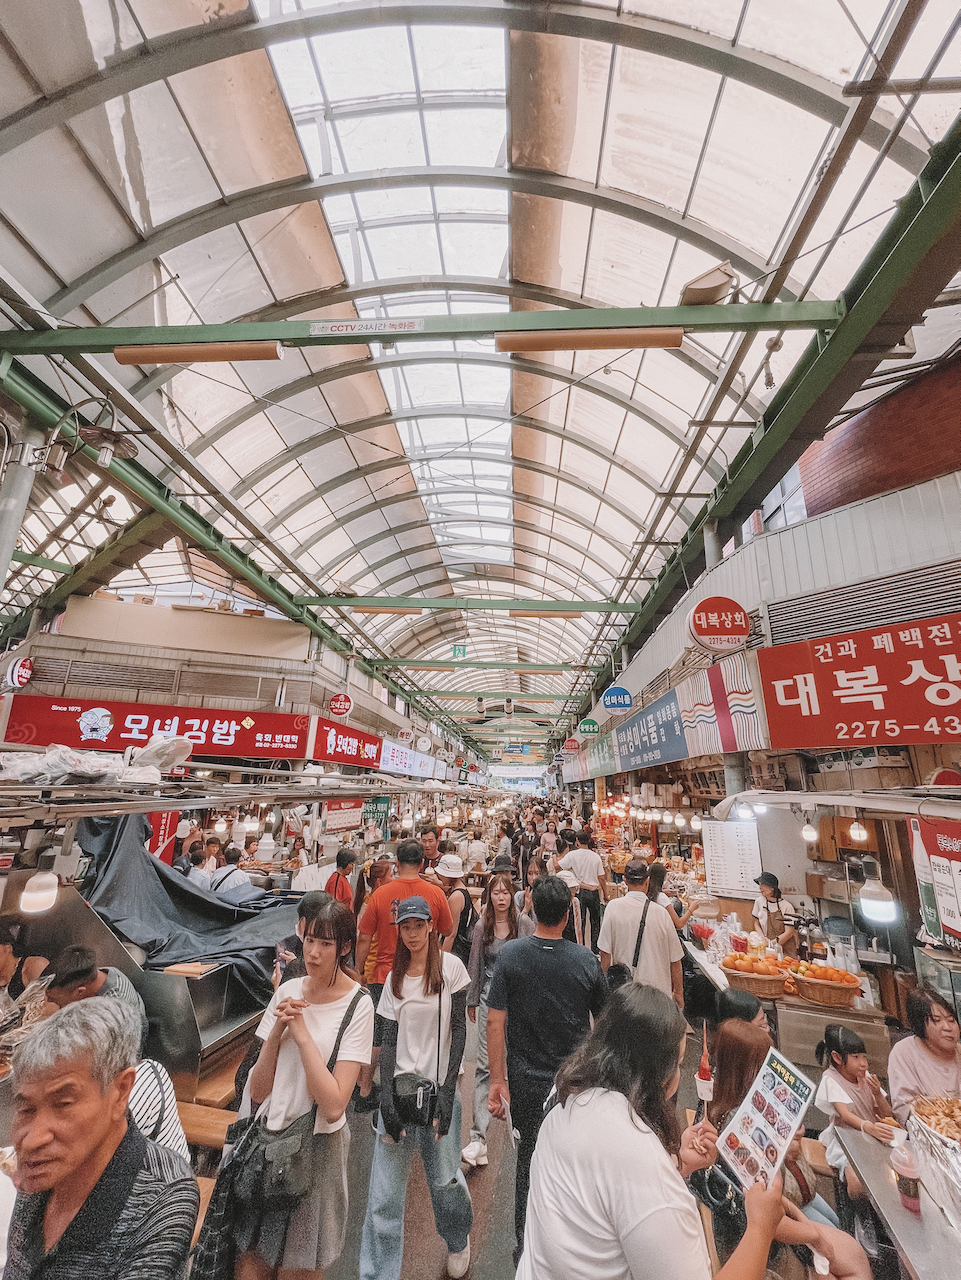 La foule au marché Gwangjang - Séoul - Corée du Sud